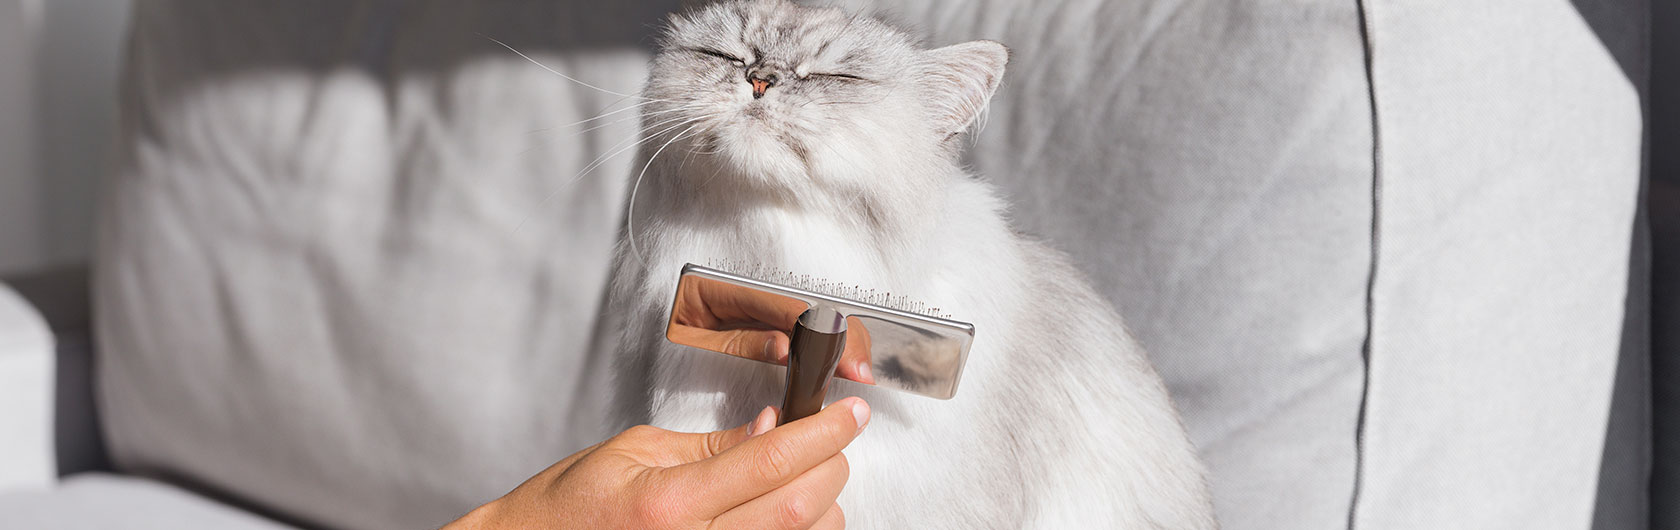 cuidados del pelo de gatos y alimento para gatos de calidad nutribon